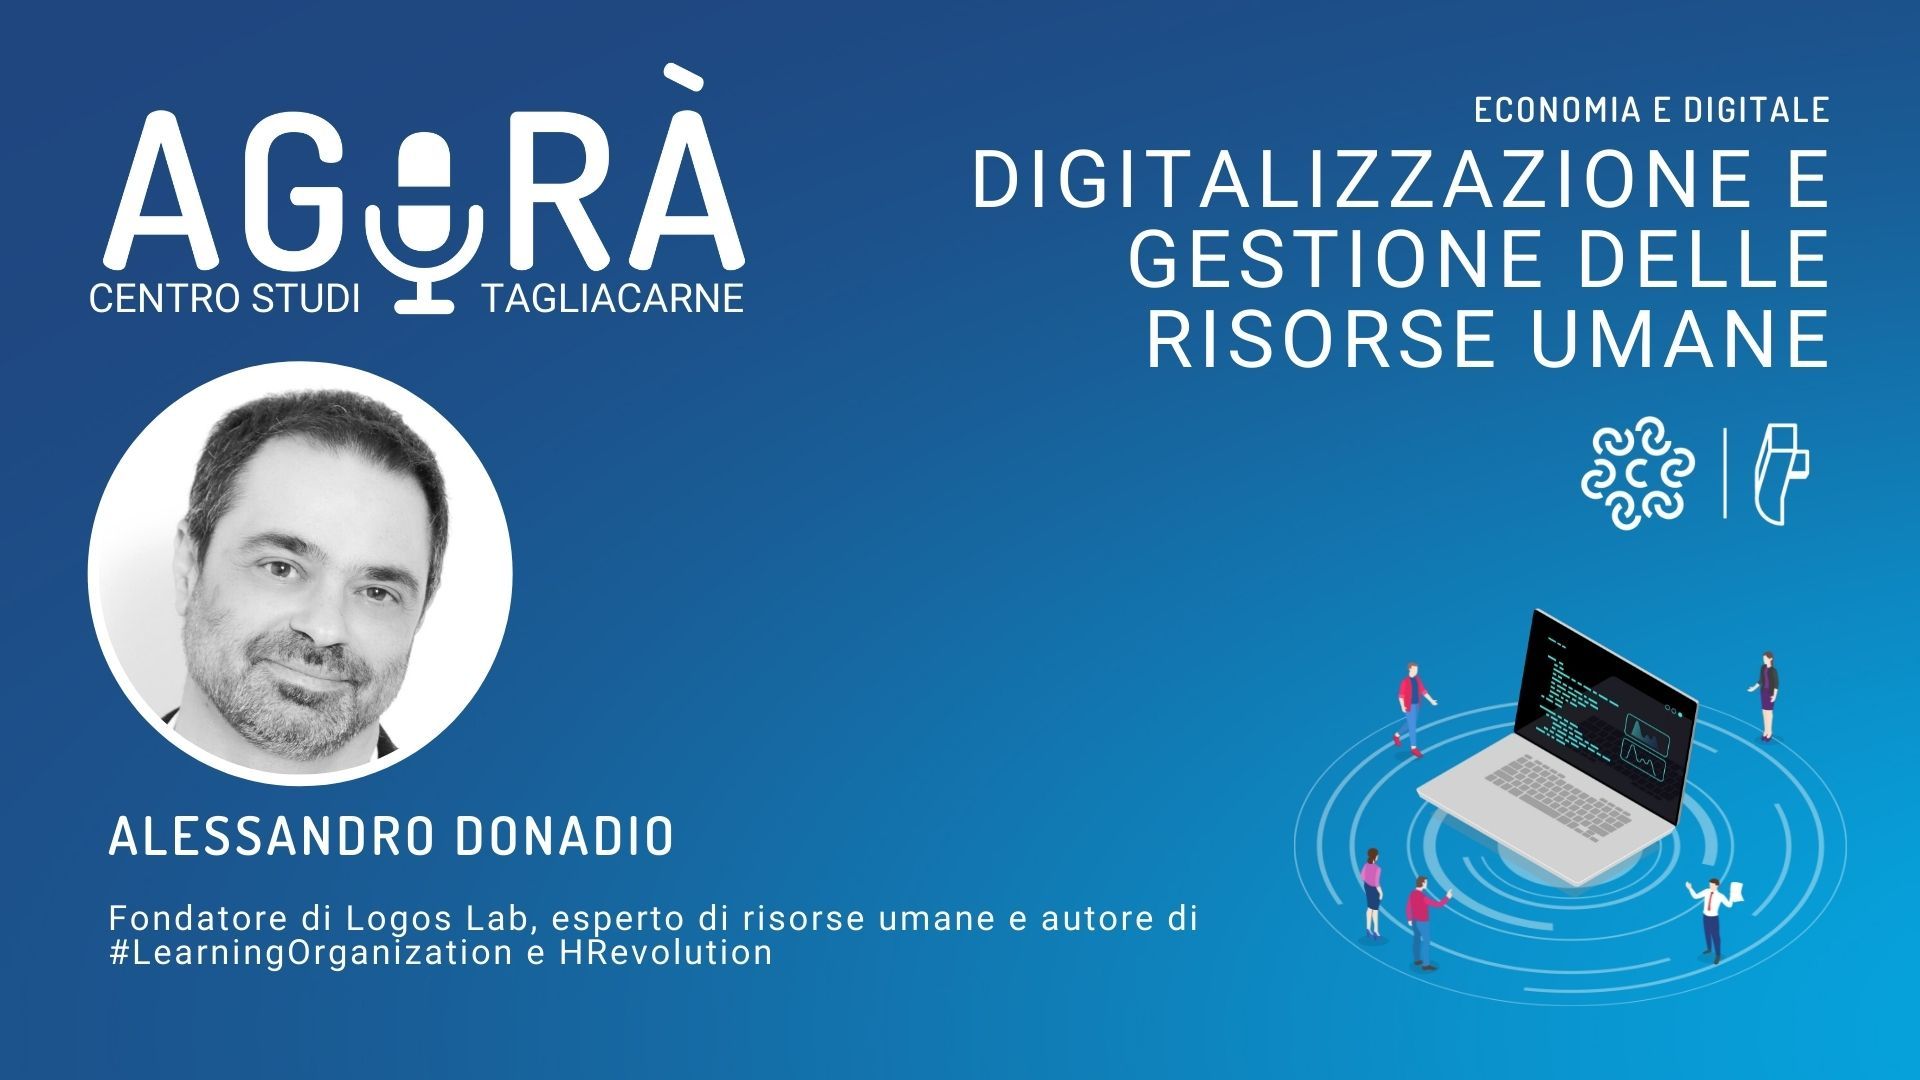 Il Digitale rivoluziona la gestione delle risorse umane intervista Agorà Podcast Tagliacarne Alessandro Donadio